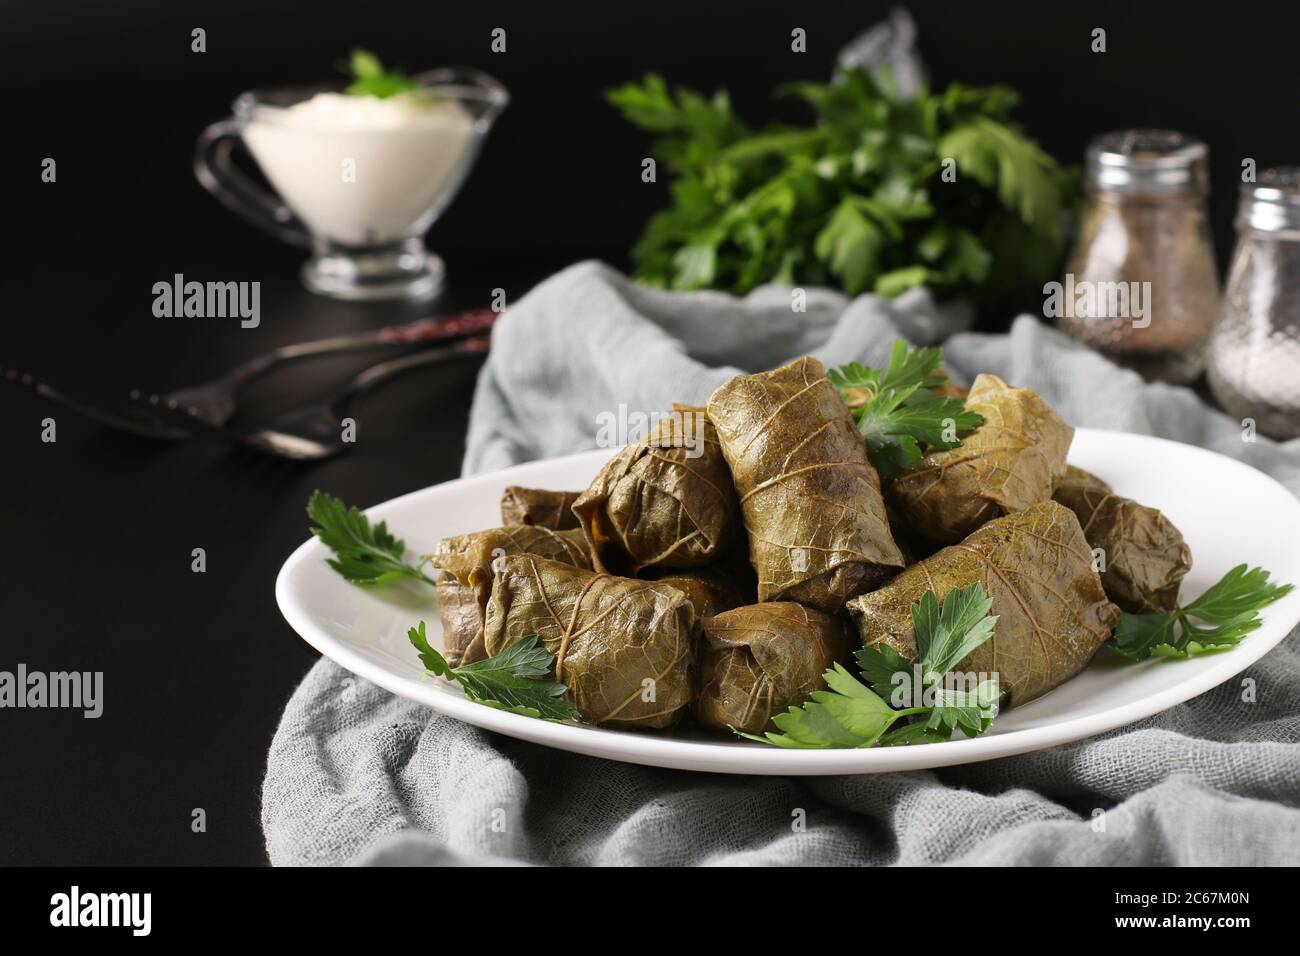 Dolma - foglie di uva farcite con riso e carne su fondo nero. Cucina tradizionale caucasica, greca, ottomana e turca Foto Stock